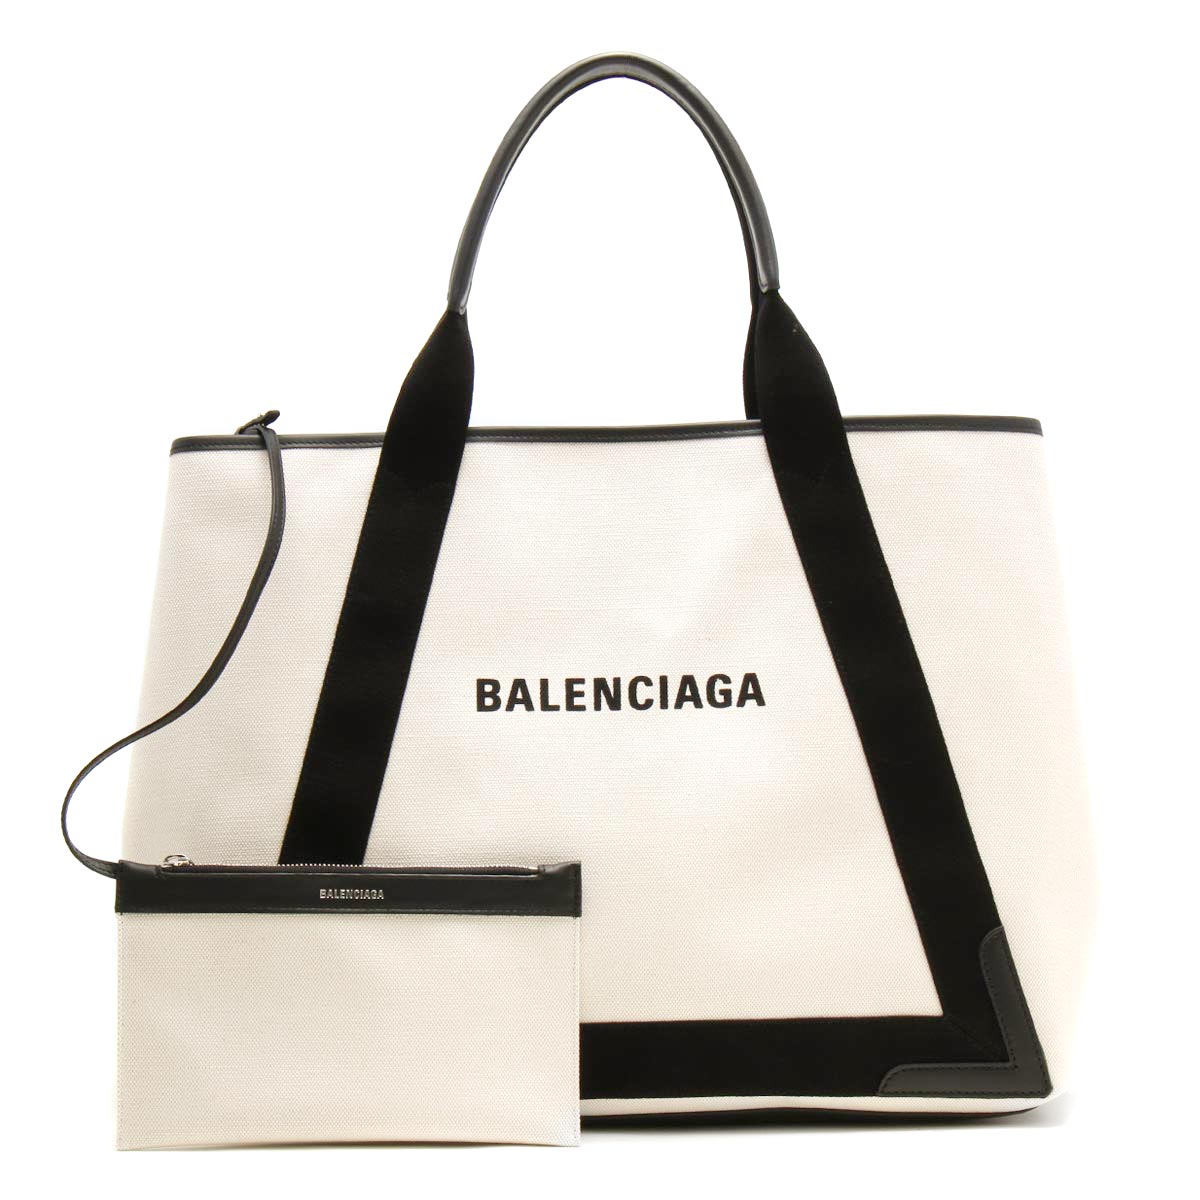 バレンシアガBALENCIAGAトートバッグ黒×白ネイビーカバスキャンパストート トートバッグ 安い通販